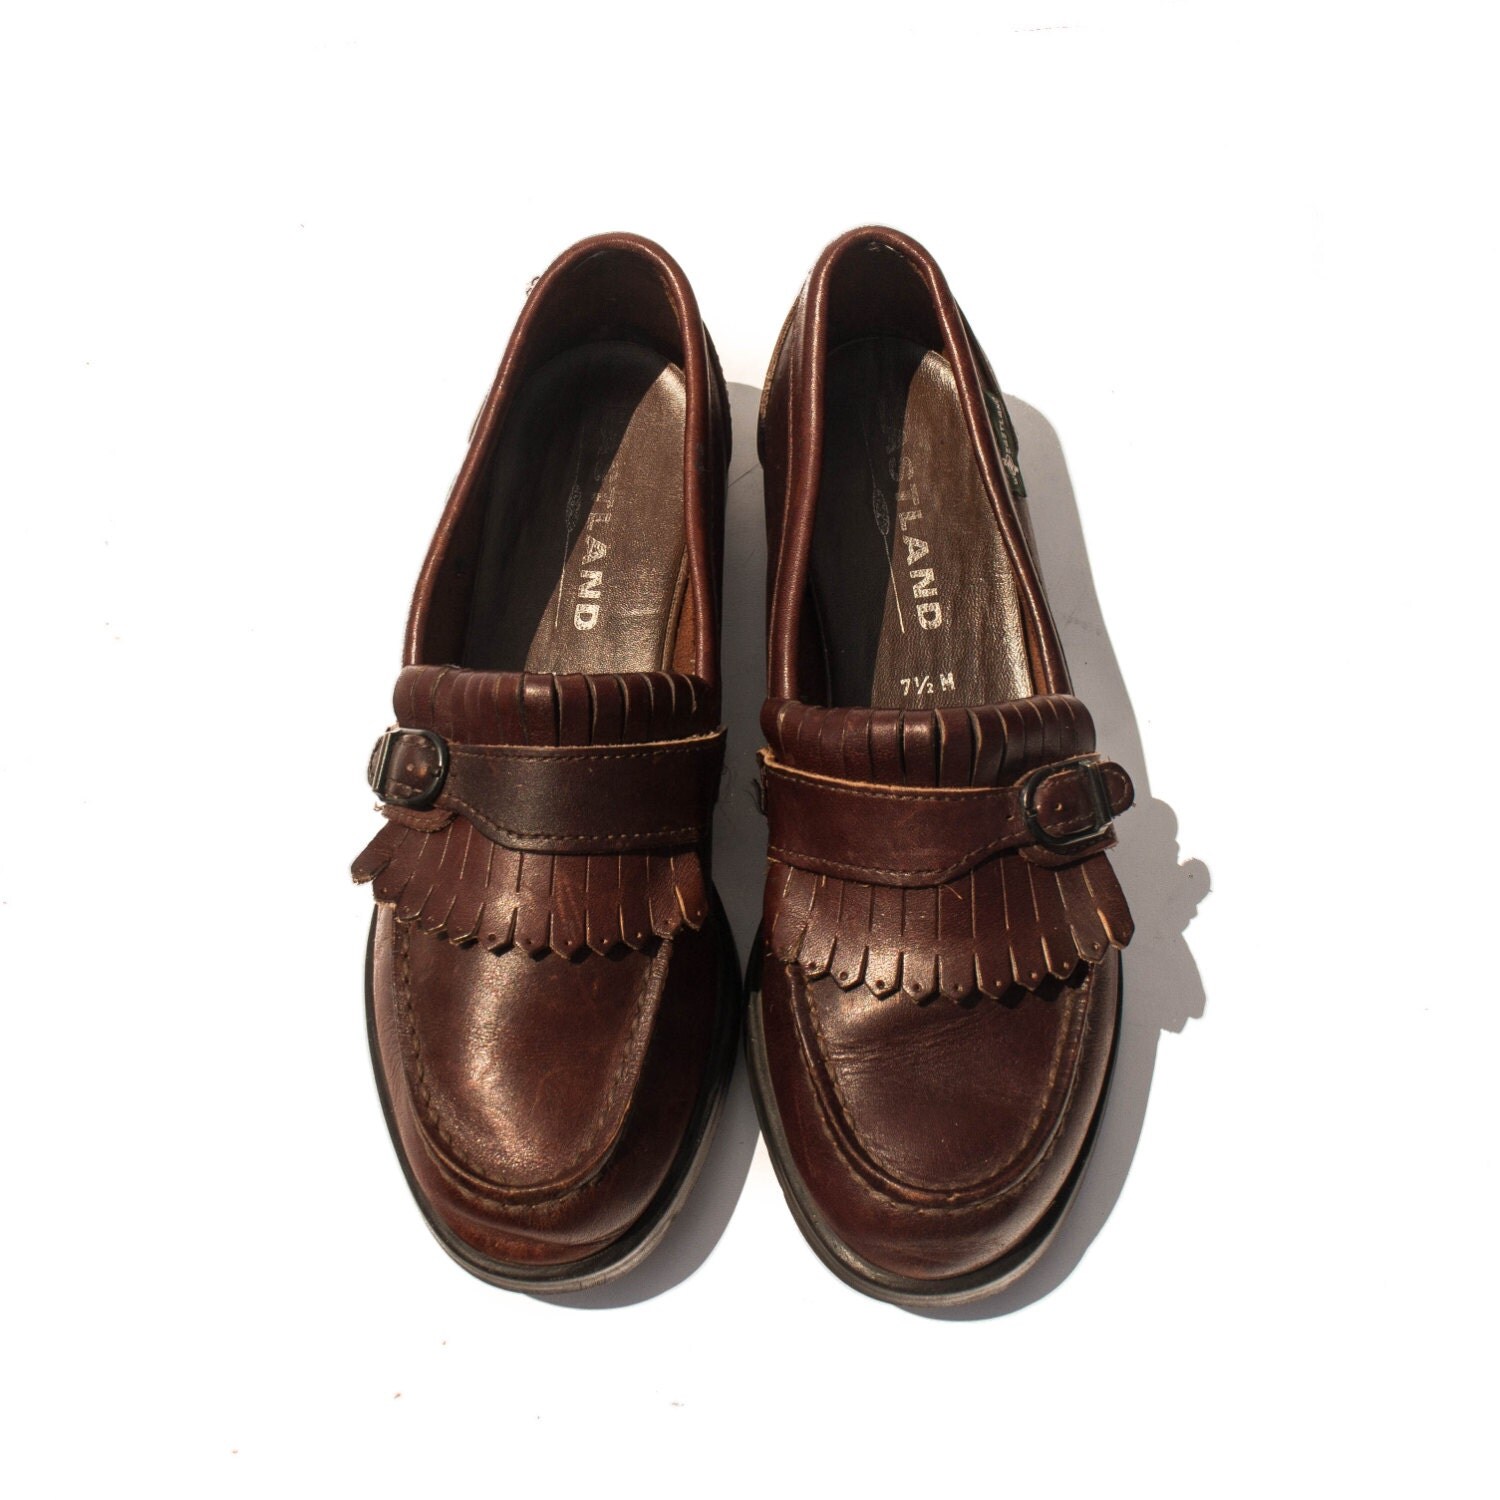 7.5 M Women's Eastland Shoes Brown Kiltie Fringe Loafers